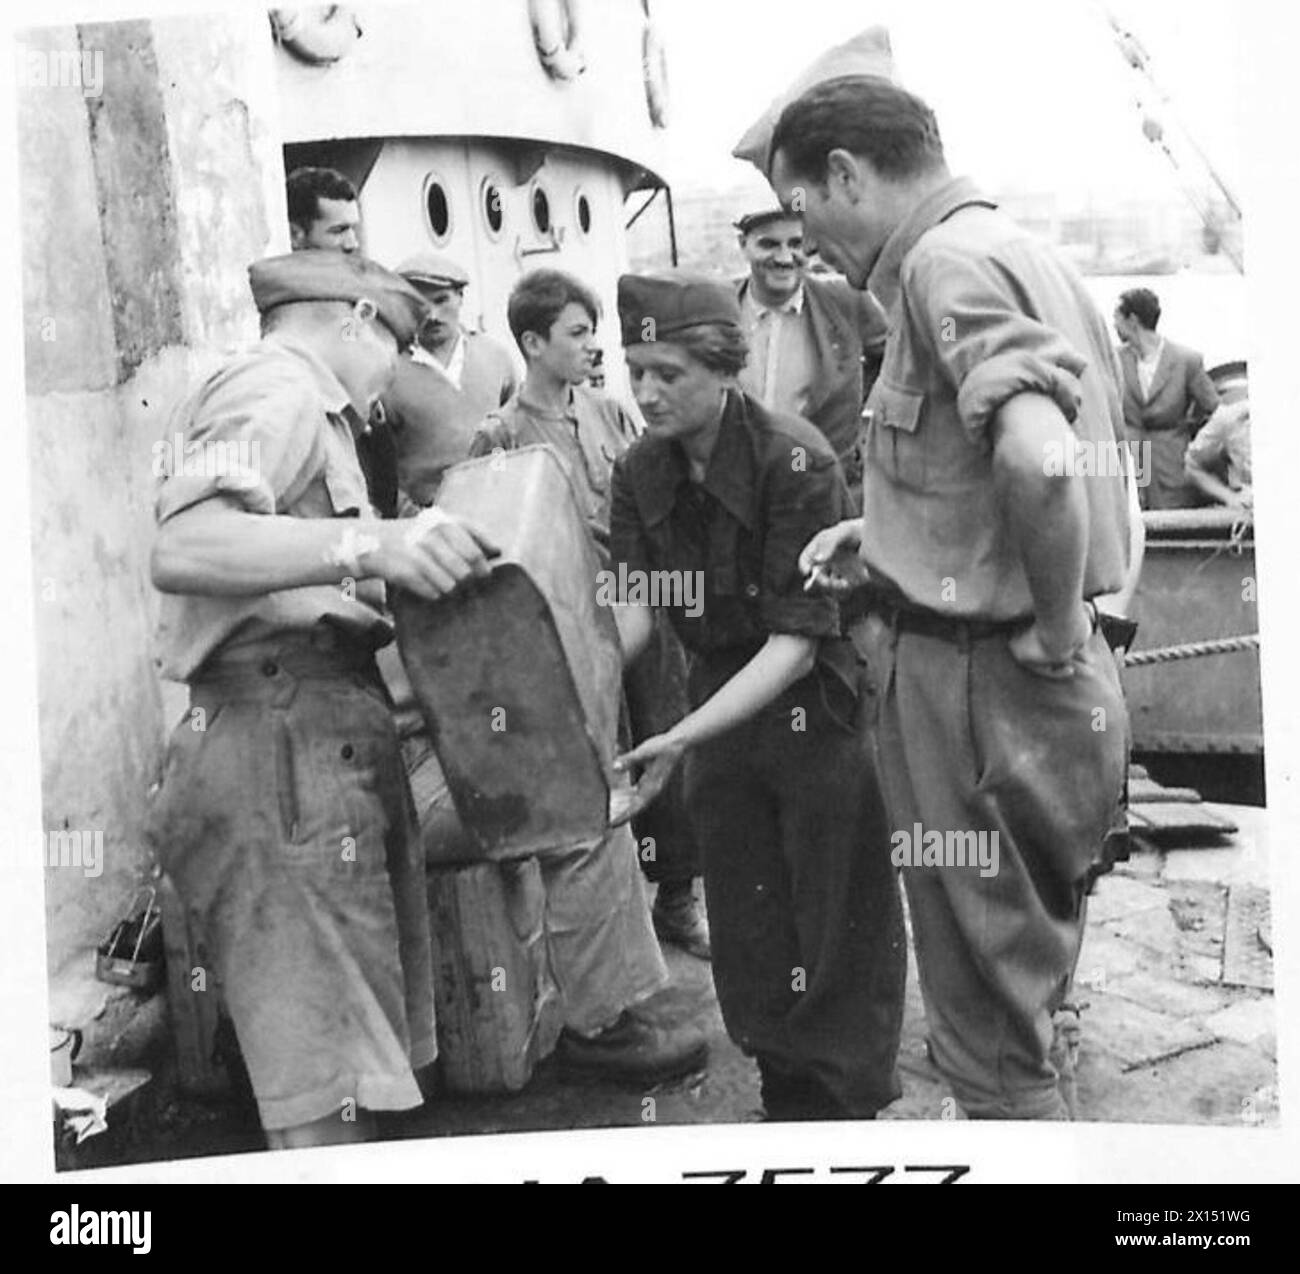 JUGOSLAVI IN ITALIA - uno dei patrioti JUGOSLAVI che combattevano, Zina Nadan Zon, è qui visto sulla banchina, ricevendo acqua da uno dei soldati inglesi di un vicino esercito britannico di armi da fuoco Foto Stock